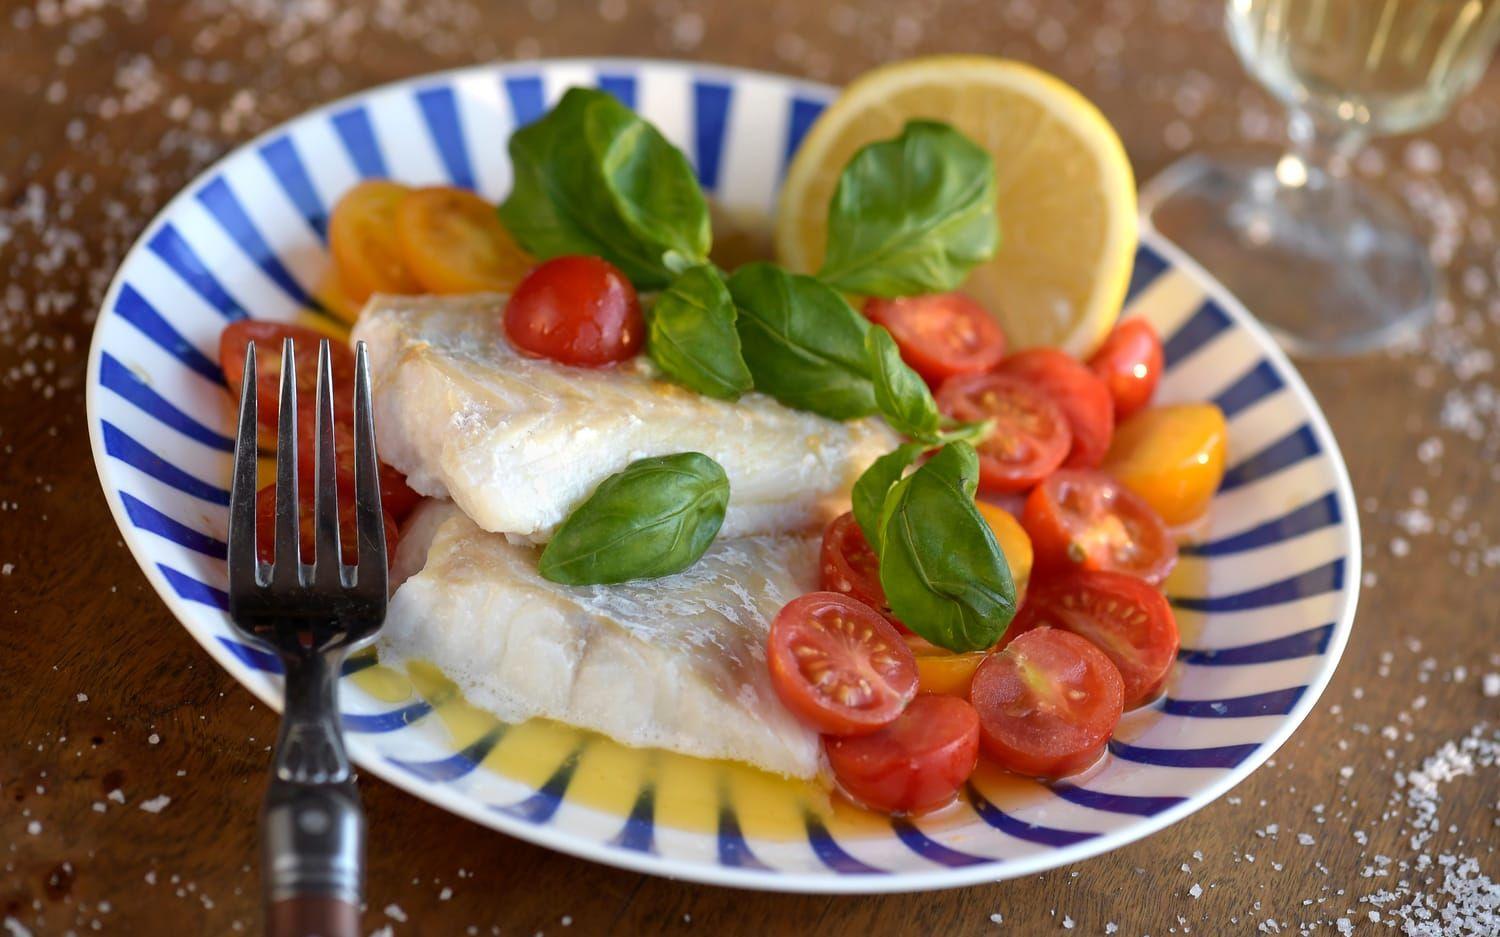 Snabbrimmad torsk är en fiffig vardagslösning. Med brynt citronsmör och färggranna tomater blir det rena festmåltiden. Foto: TT